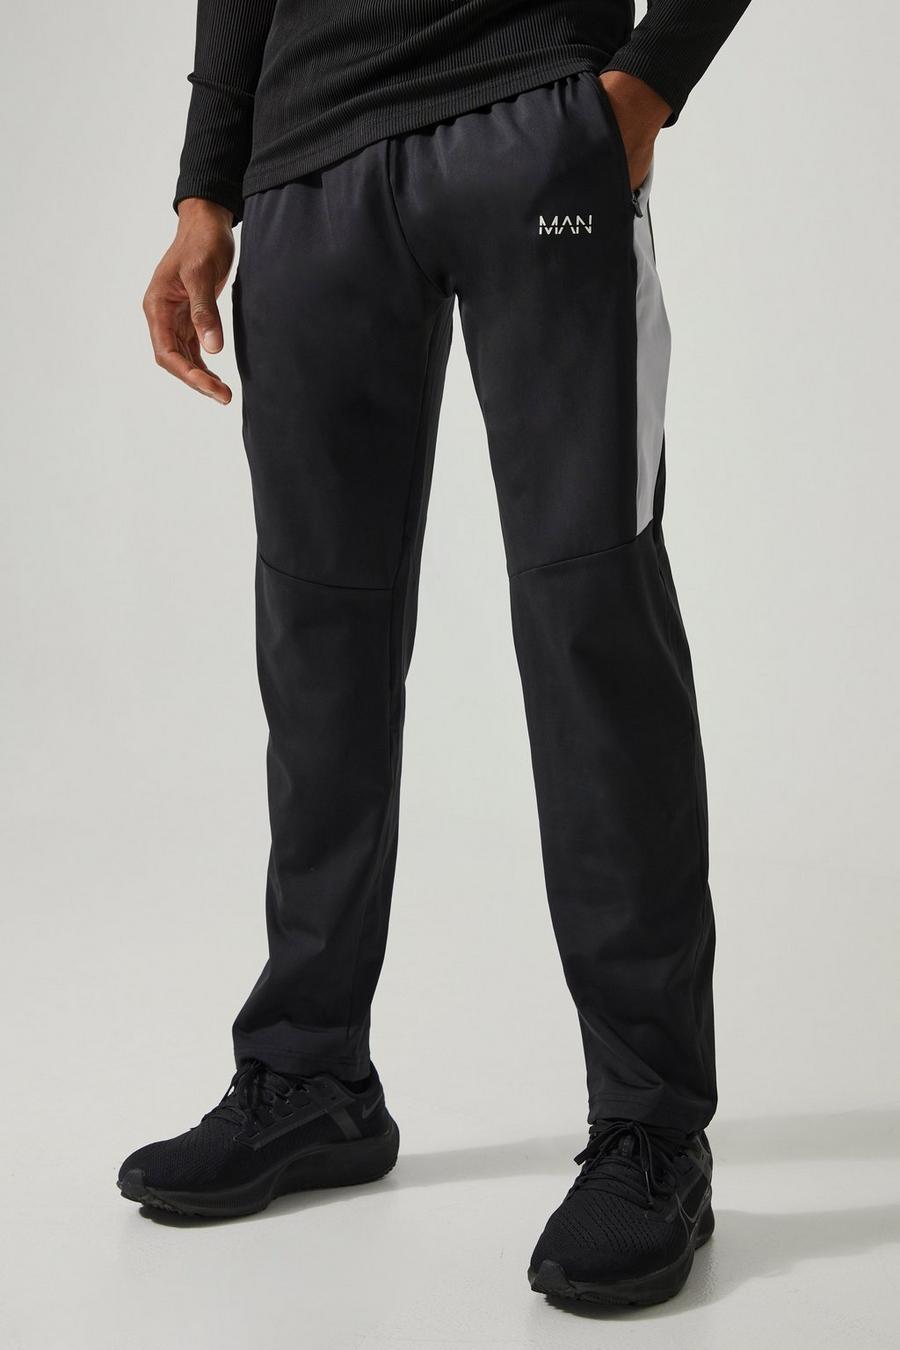 Pantalón deportivo Active resistente con panel y logo, Black